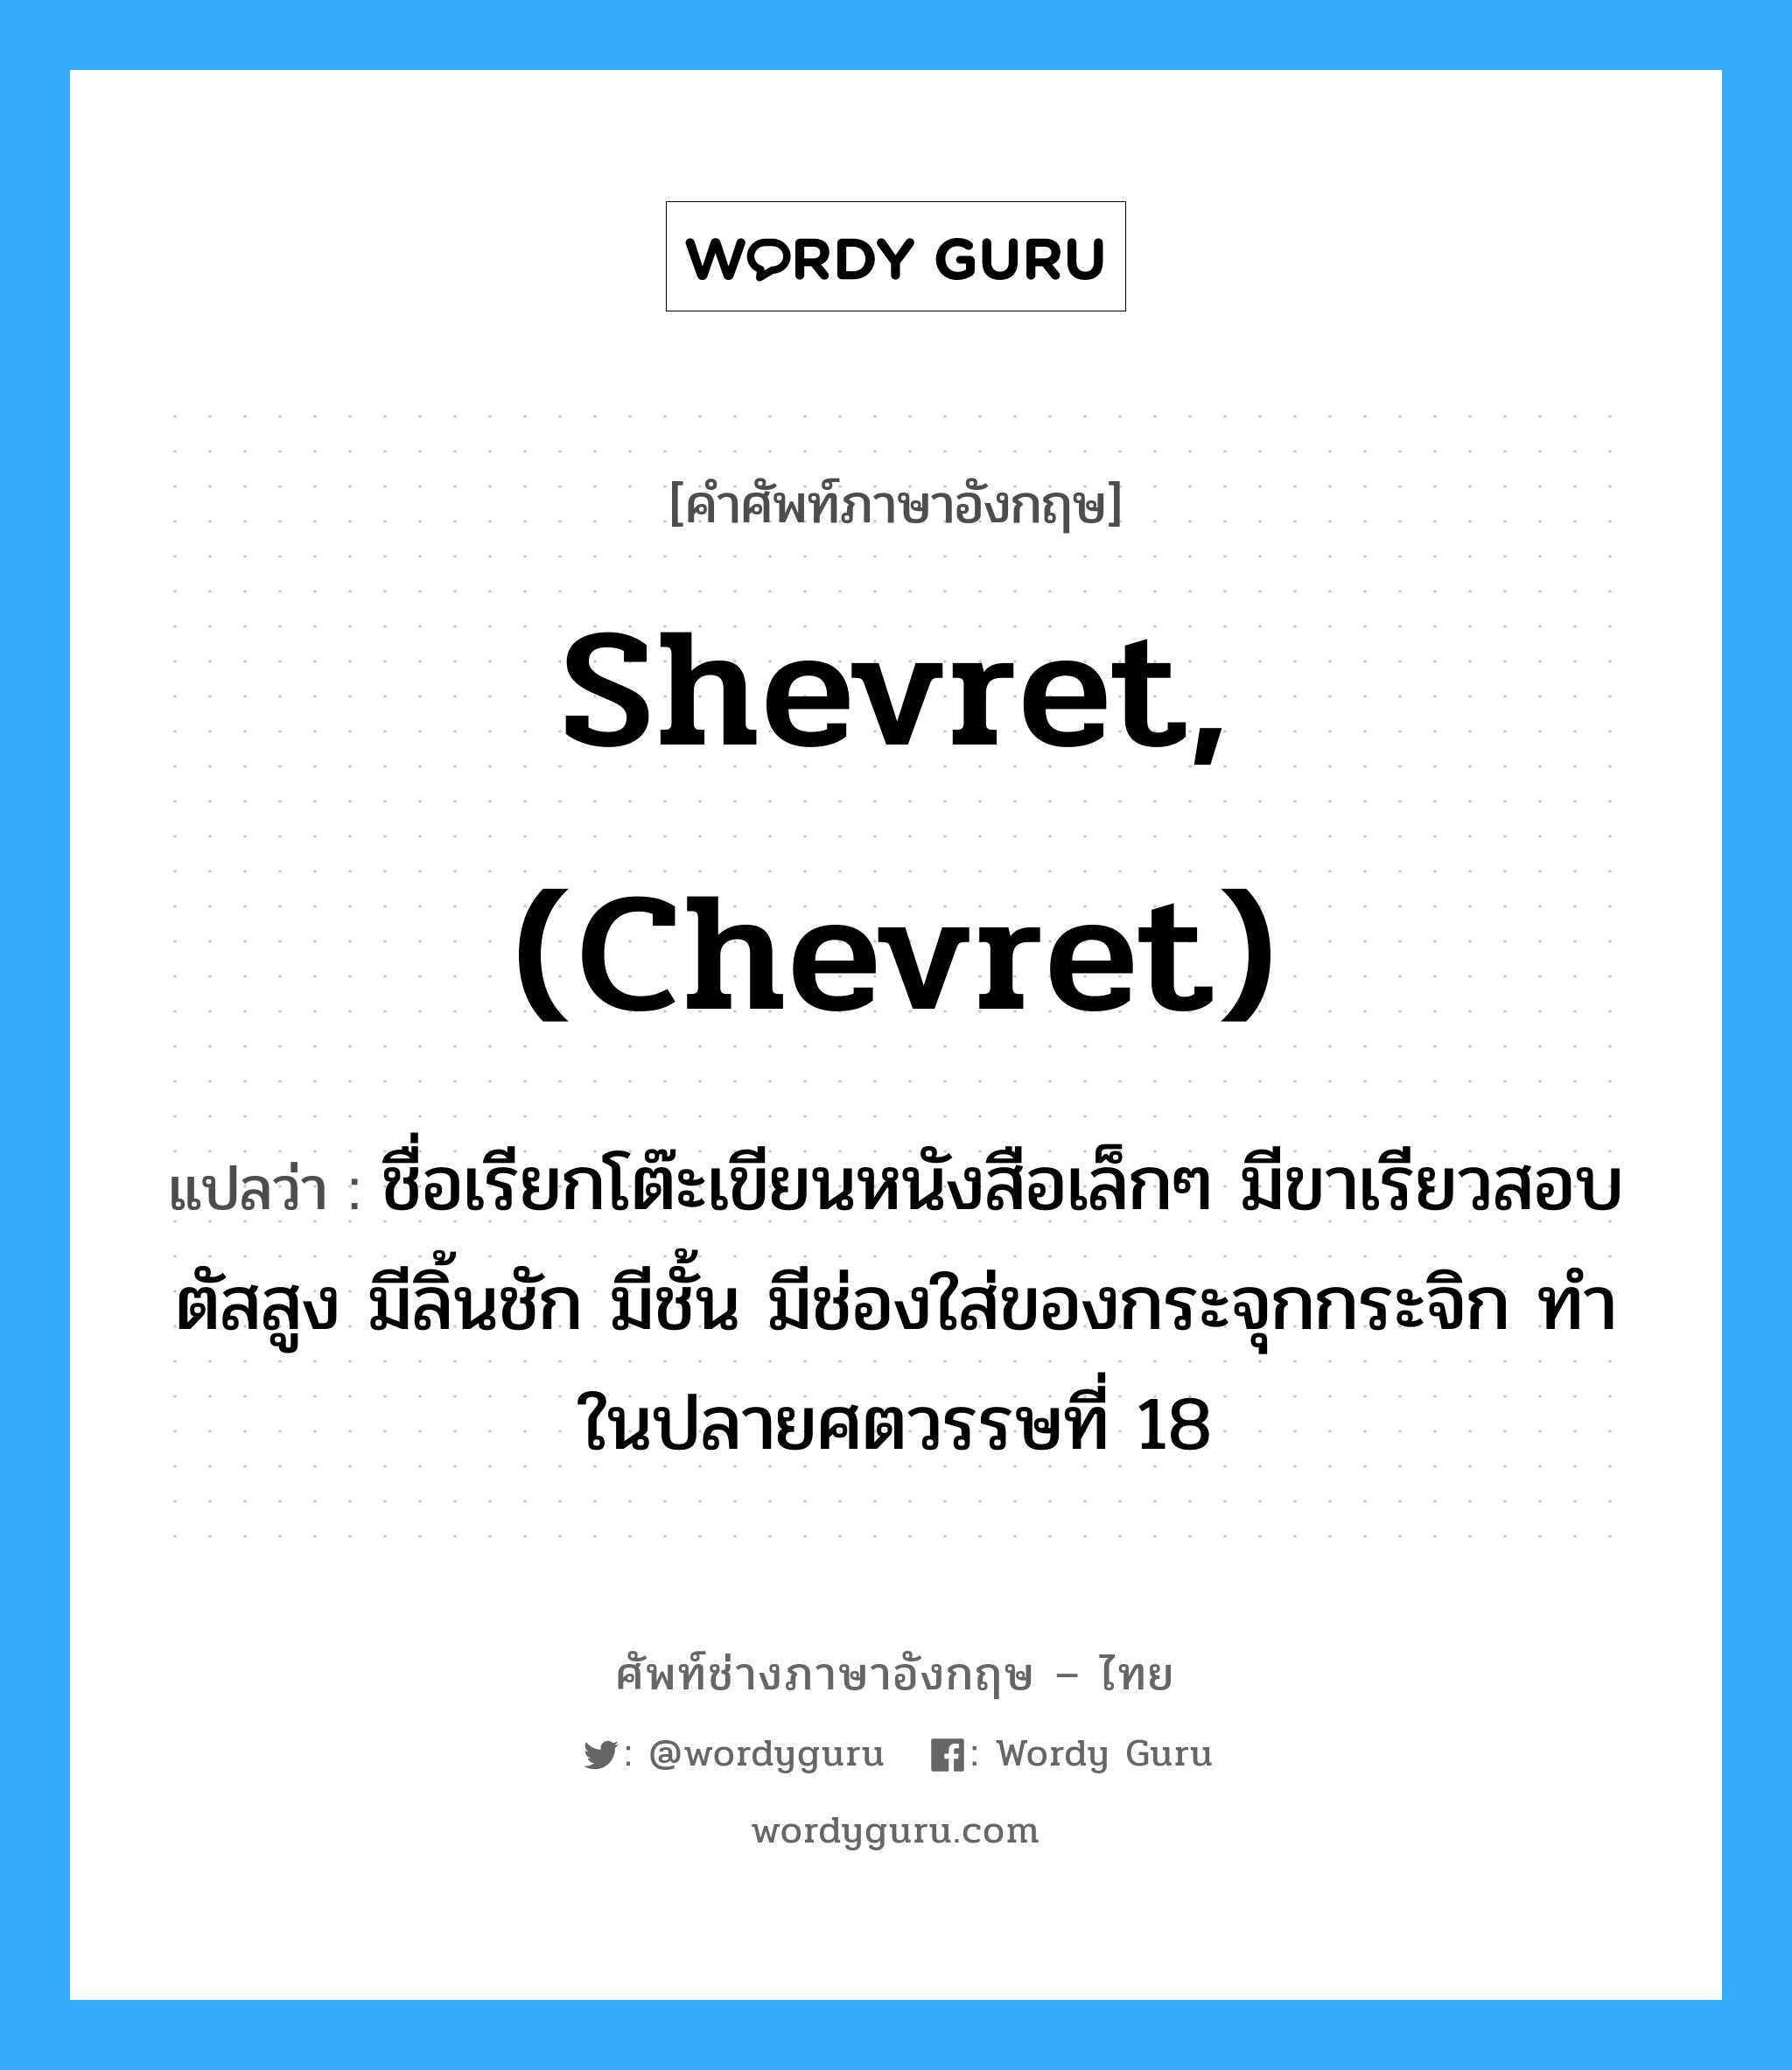 shevret, (chevret) แปลว่า?, คำศัพท์ช่างภาษาอังกฤษ - ไทย shevret, (chevret) คำศัพท์ภาษาอังกฤษ shevret, (chevret) แปลว่า ชื่อเรียกโต๊ะเขียนหนังสือเล็กๆ มีขาเรียวสอบ ตัสสูง มีลิ้นชัก มีชั้น มีช่องใส่ของกระจุกกระจิก ทำในปลายศตวรรษที่ 18